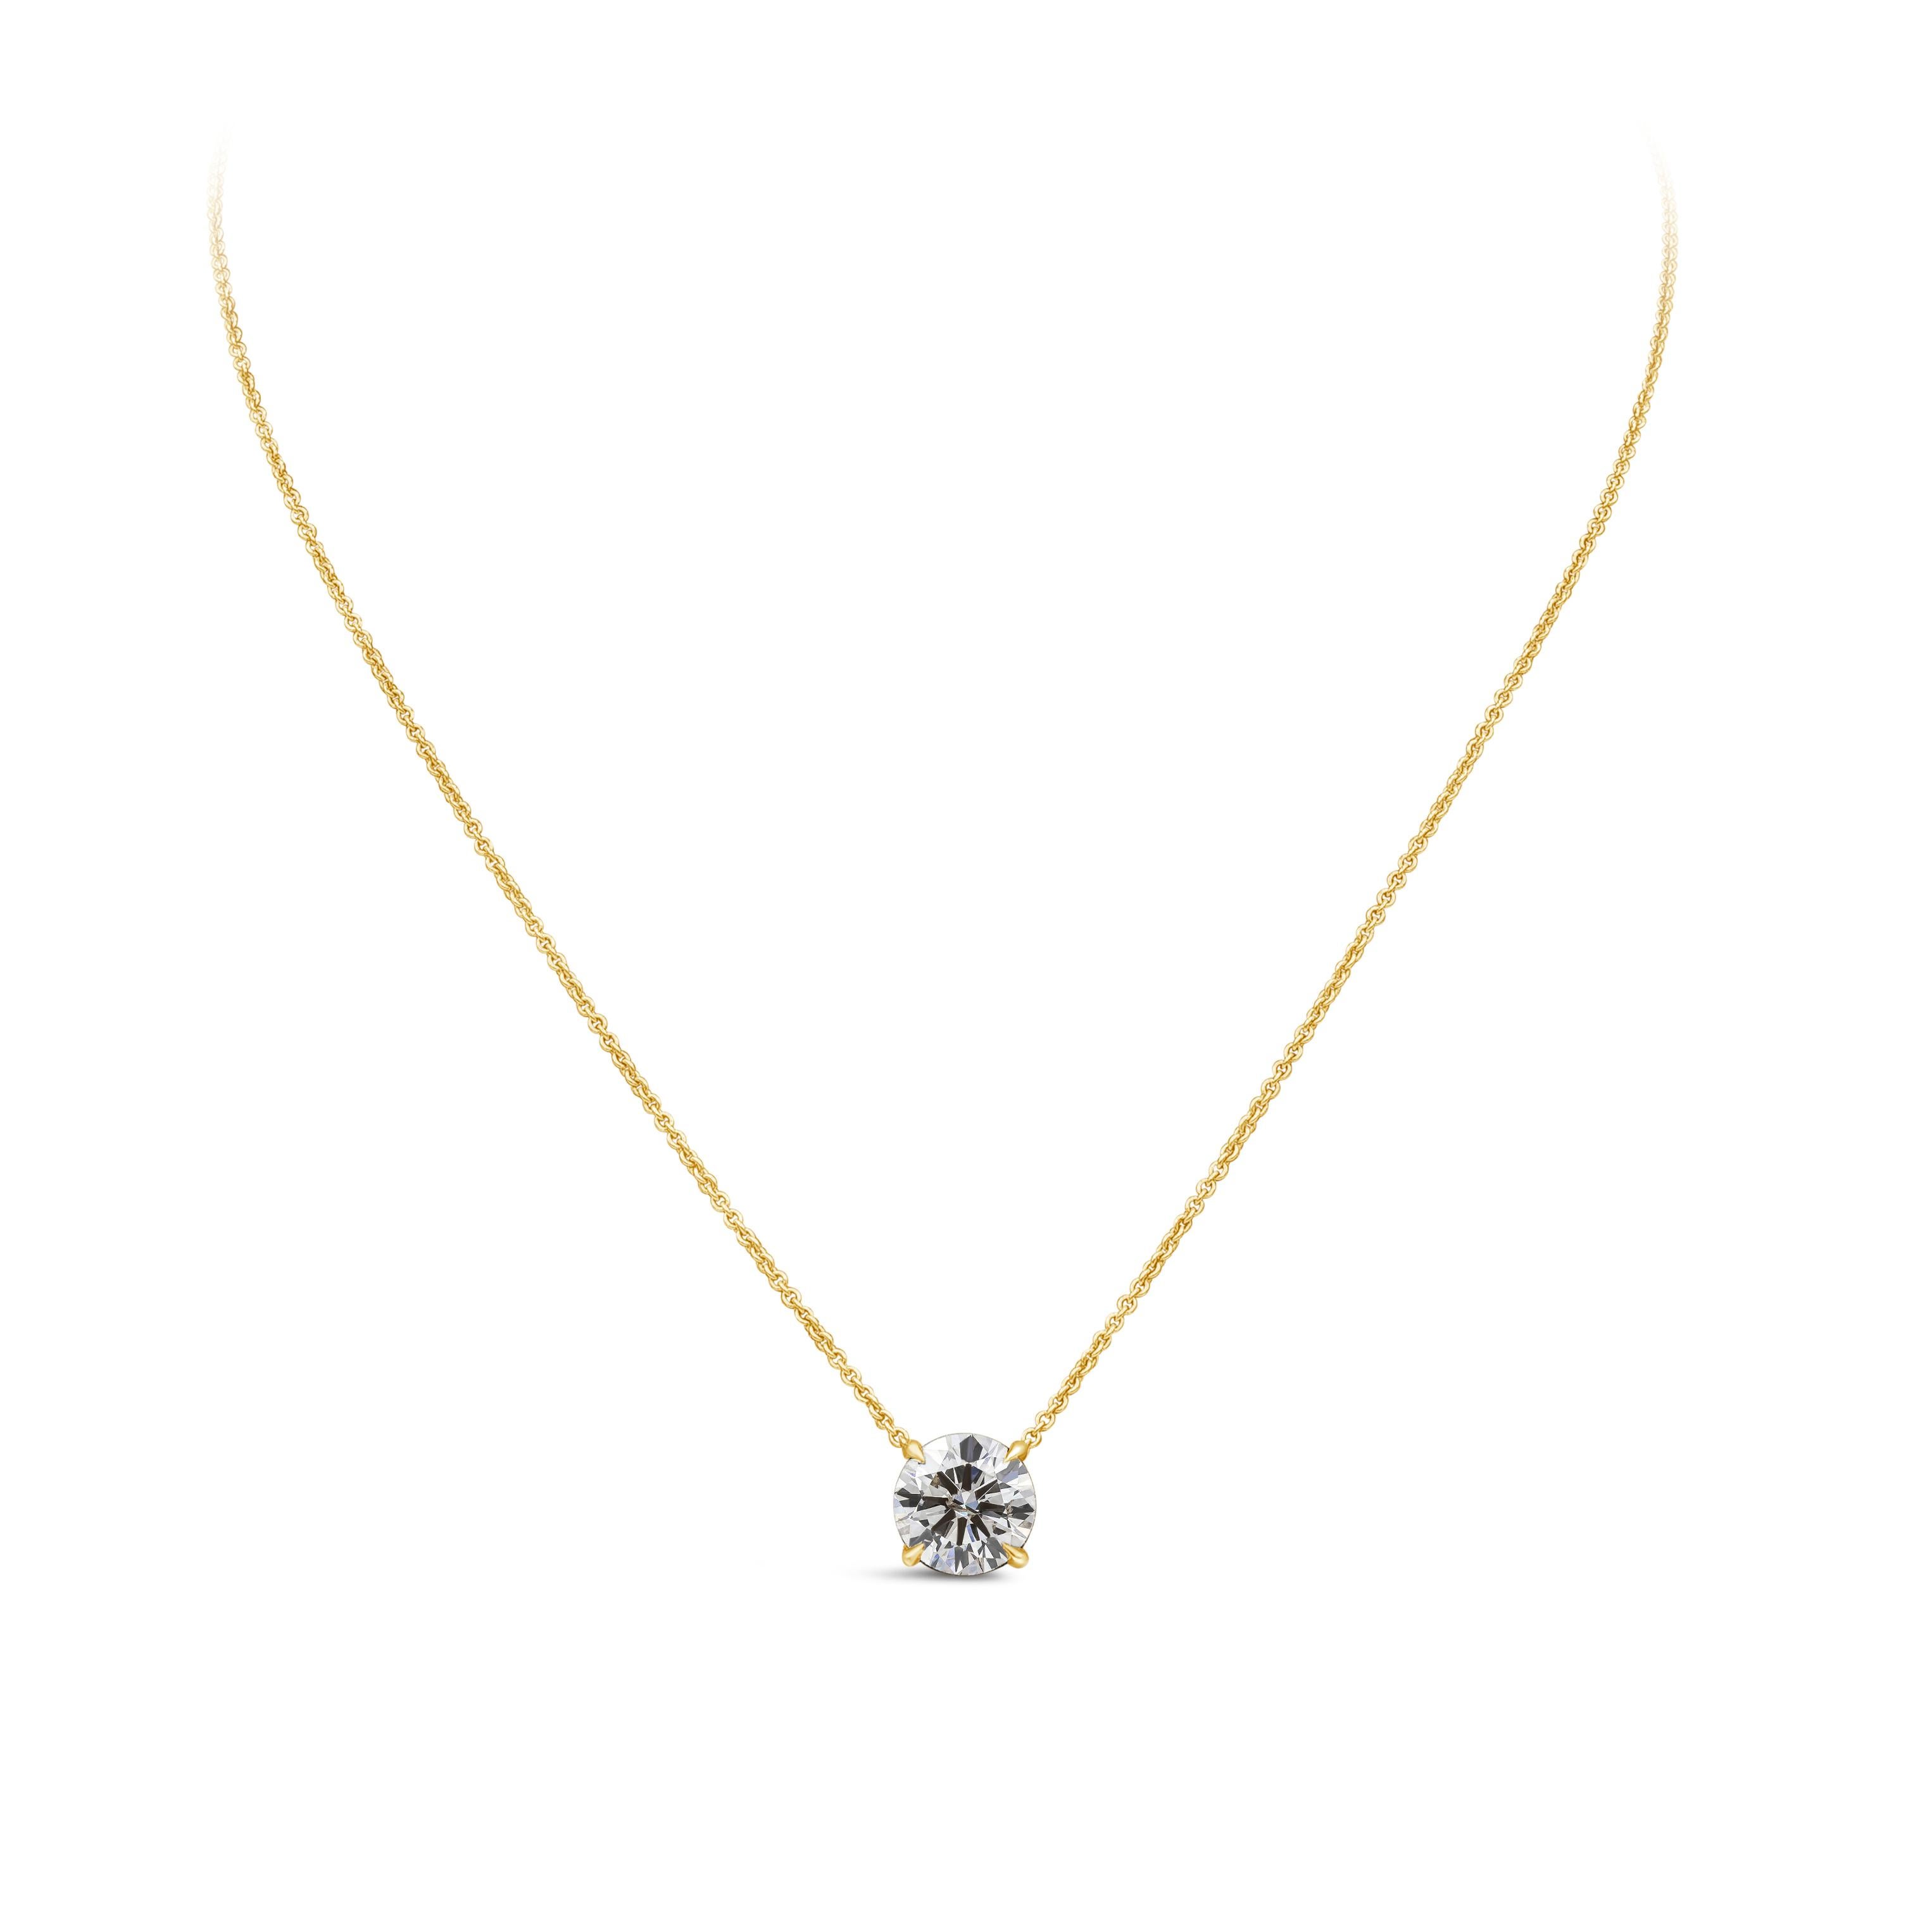 Eine klassische Solitär-Halskette mit einem einzelnen runden Diamanten im Brillantschliff mit einem Gewicht von 2,01 Karat, Farbe K und Reinheit I1. Er ist in einer traditionellen Vier-Zacken-Fassung aus 14 Karat Gelbgold gefasst. Aufgehängt an